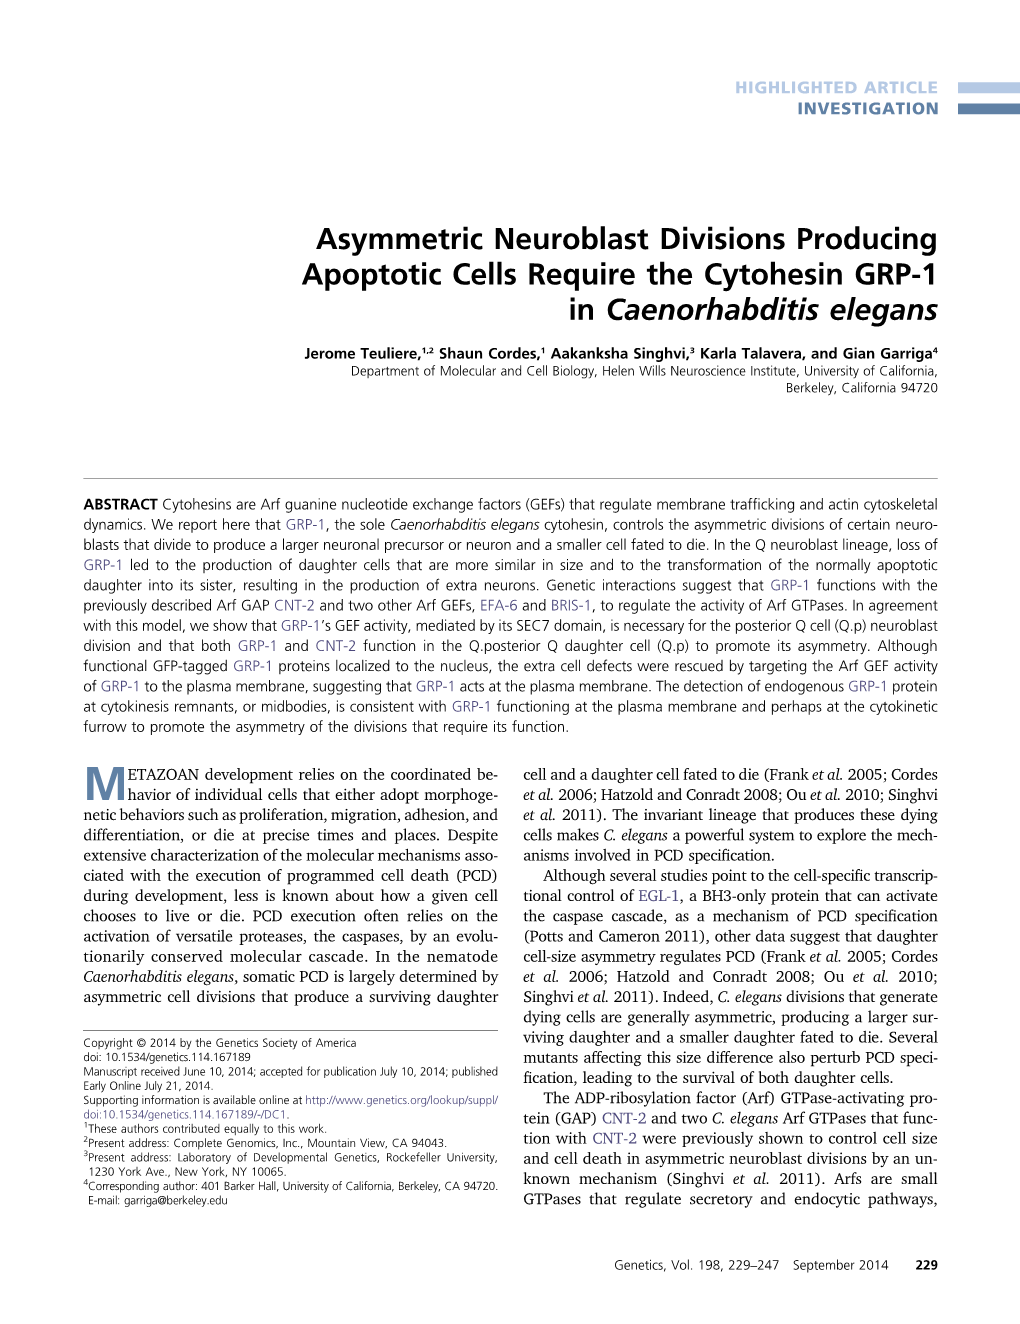 Asymmetric Neuroblast Divisions Producing Apoptotic Cells Require the Cytohesin GRP-1 in Caenorhabditis Elegans